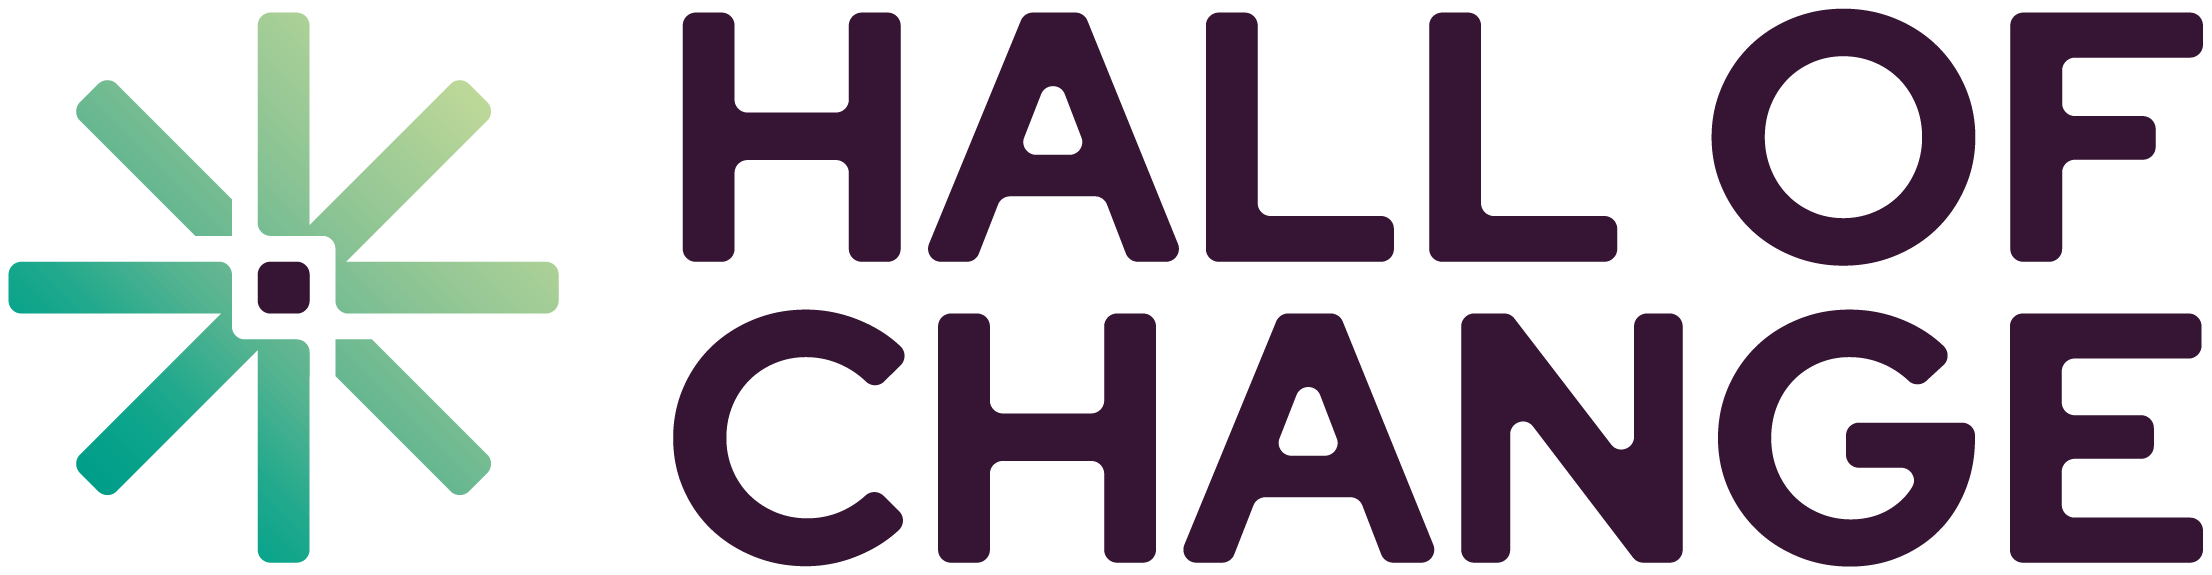 hall of change